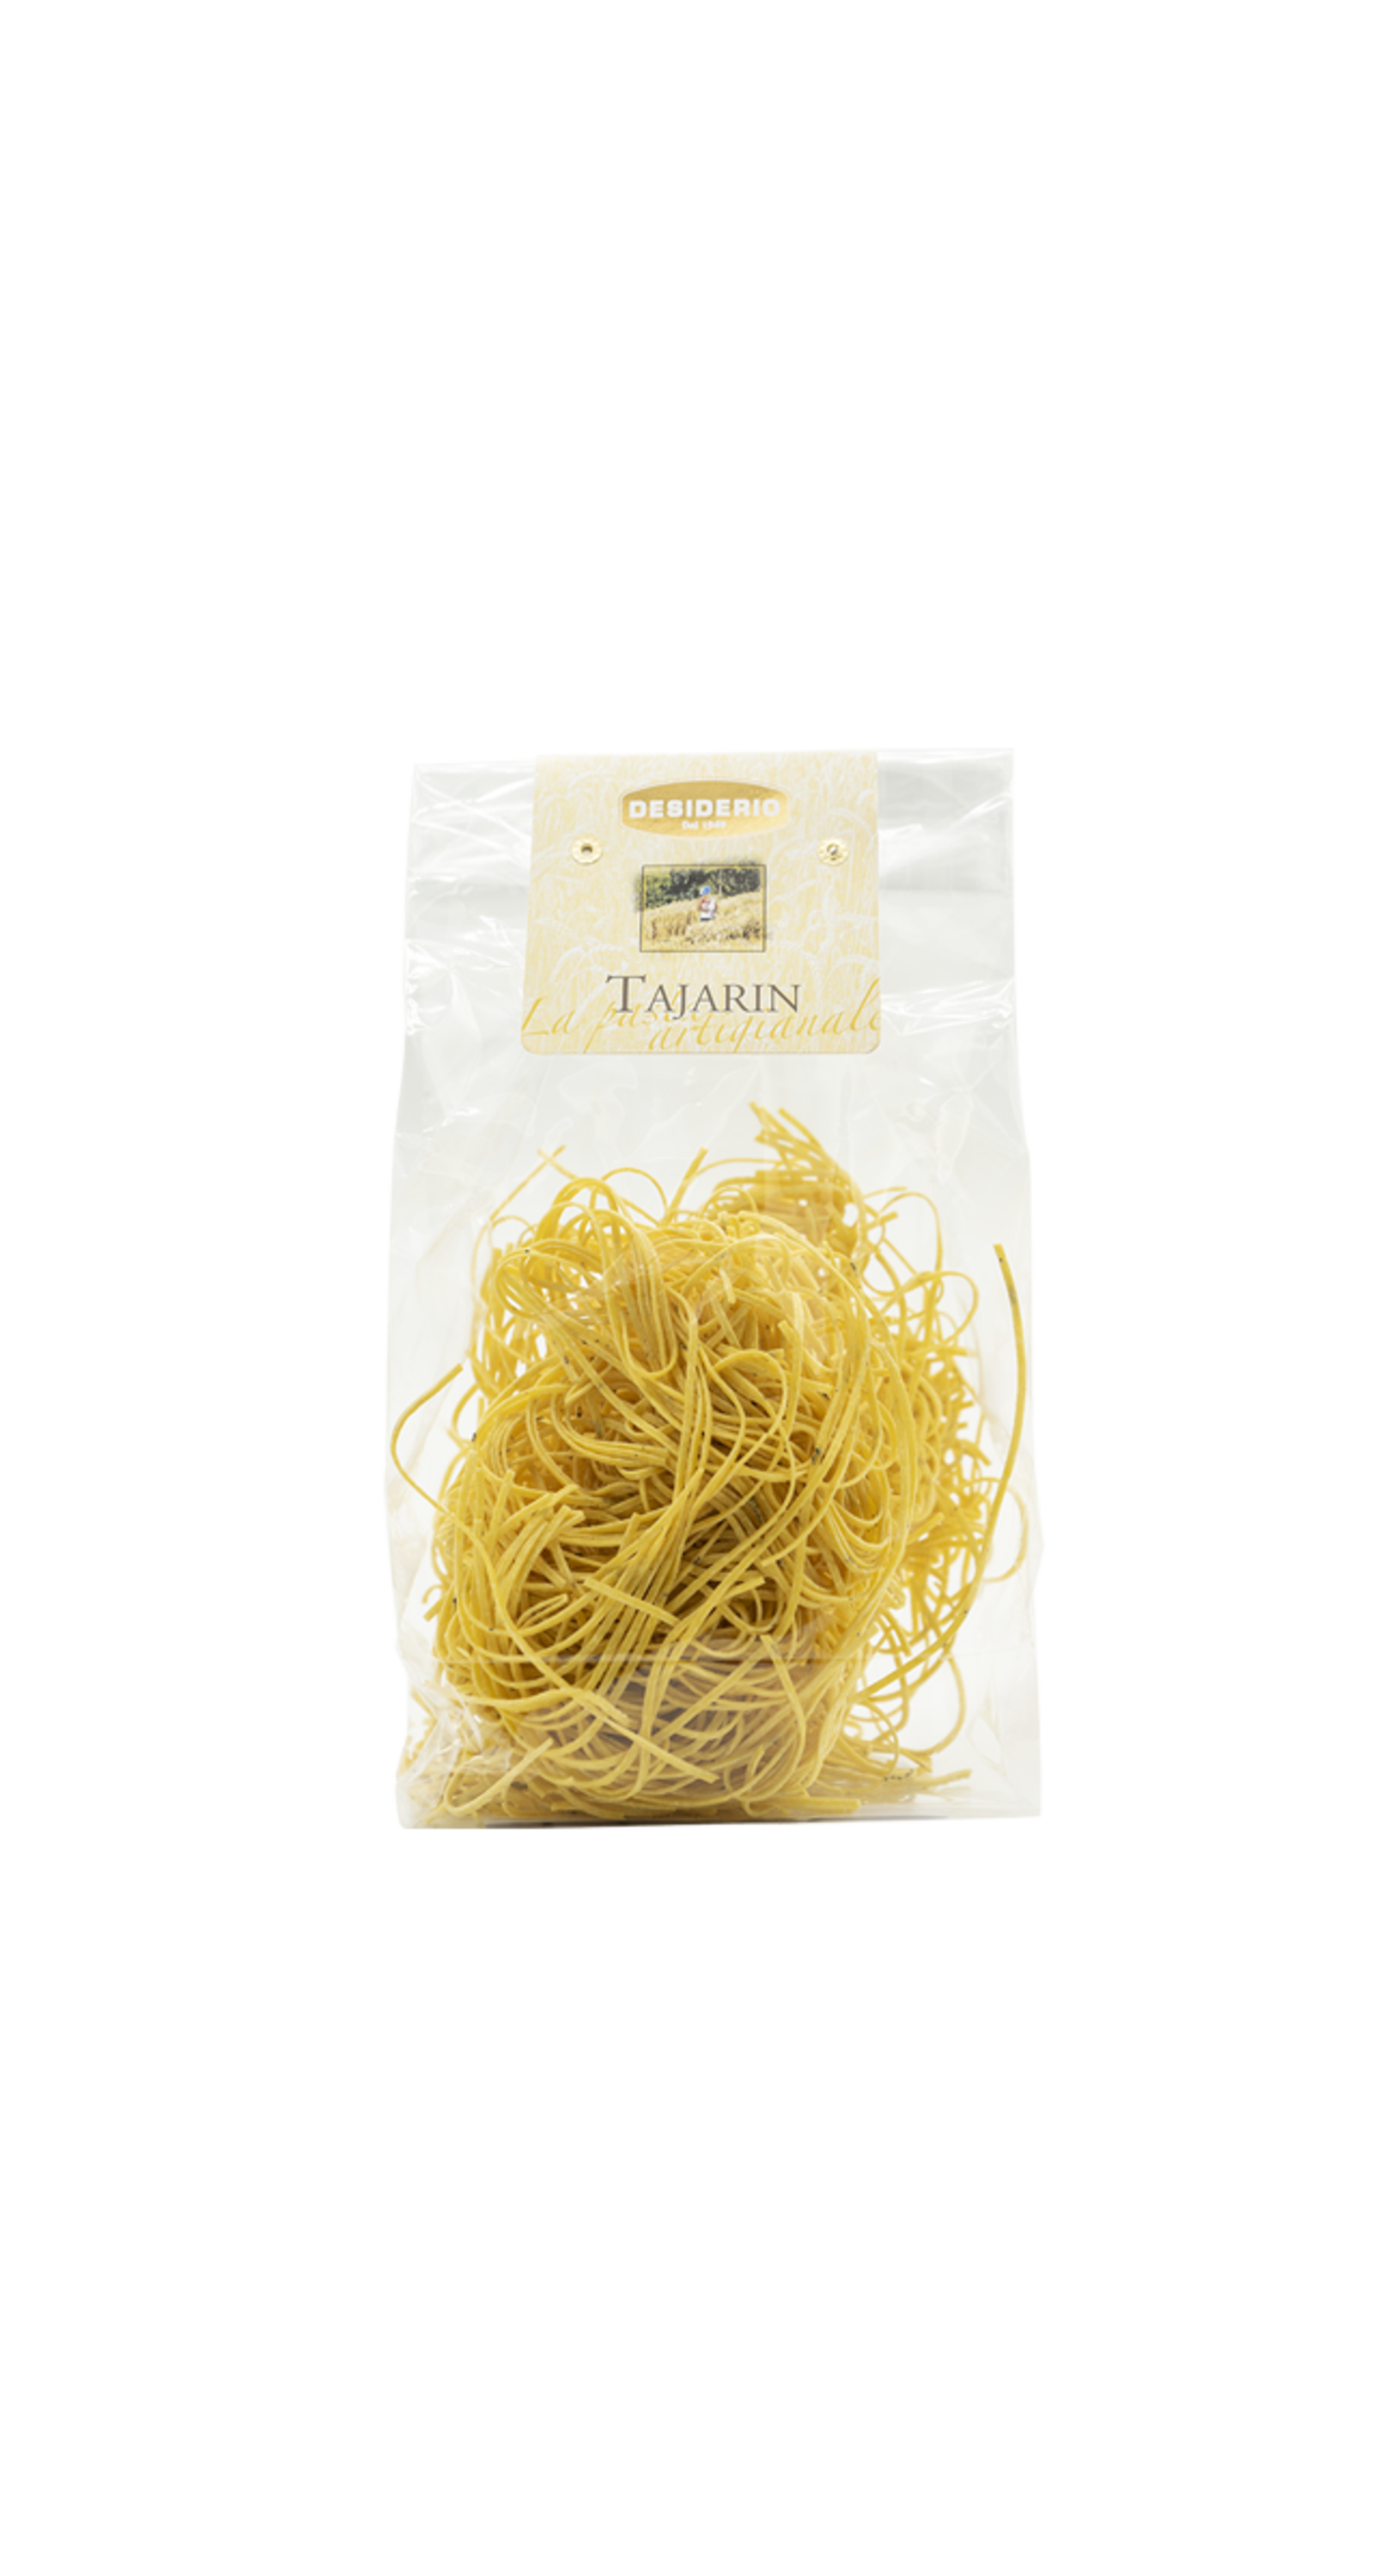 Desiderio, originele Italiaanse producten. Tajarin met witte truffel, hand gemaakte eierpasta. Inhoud zak 250 gram.